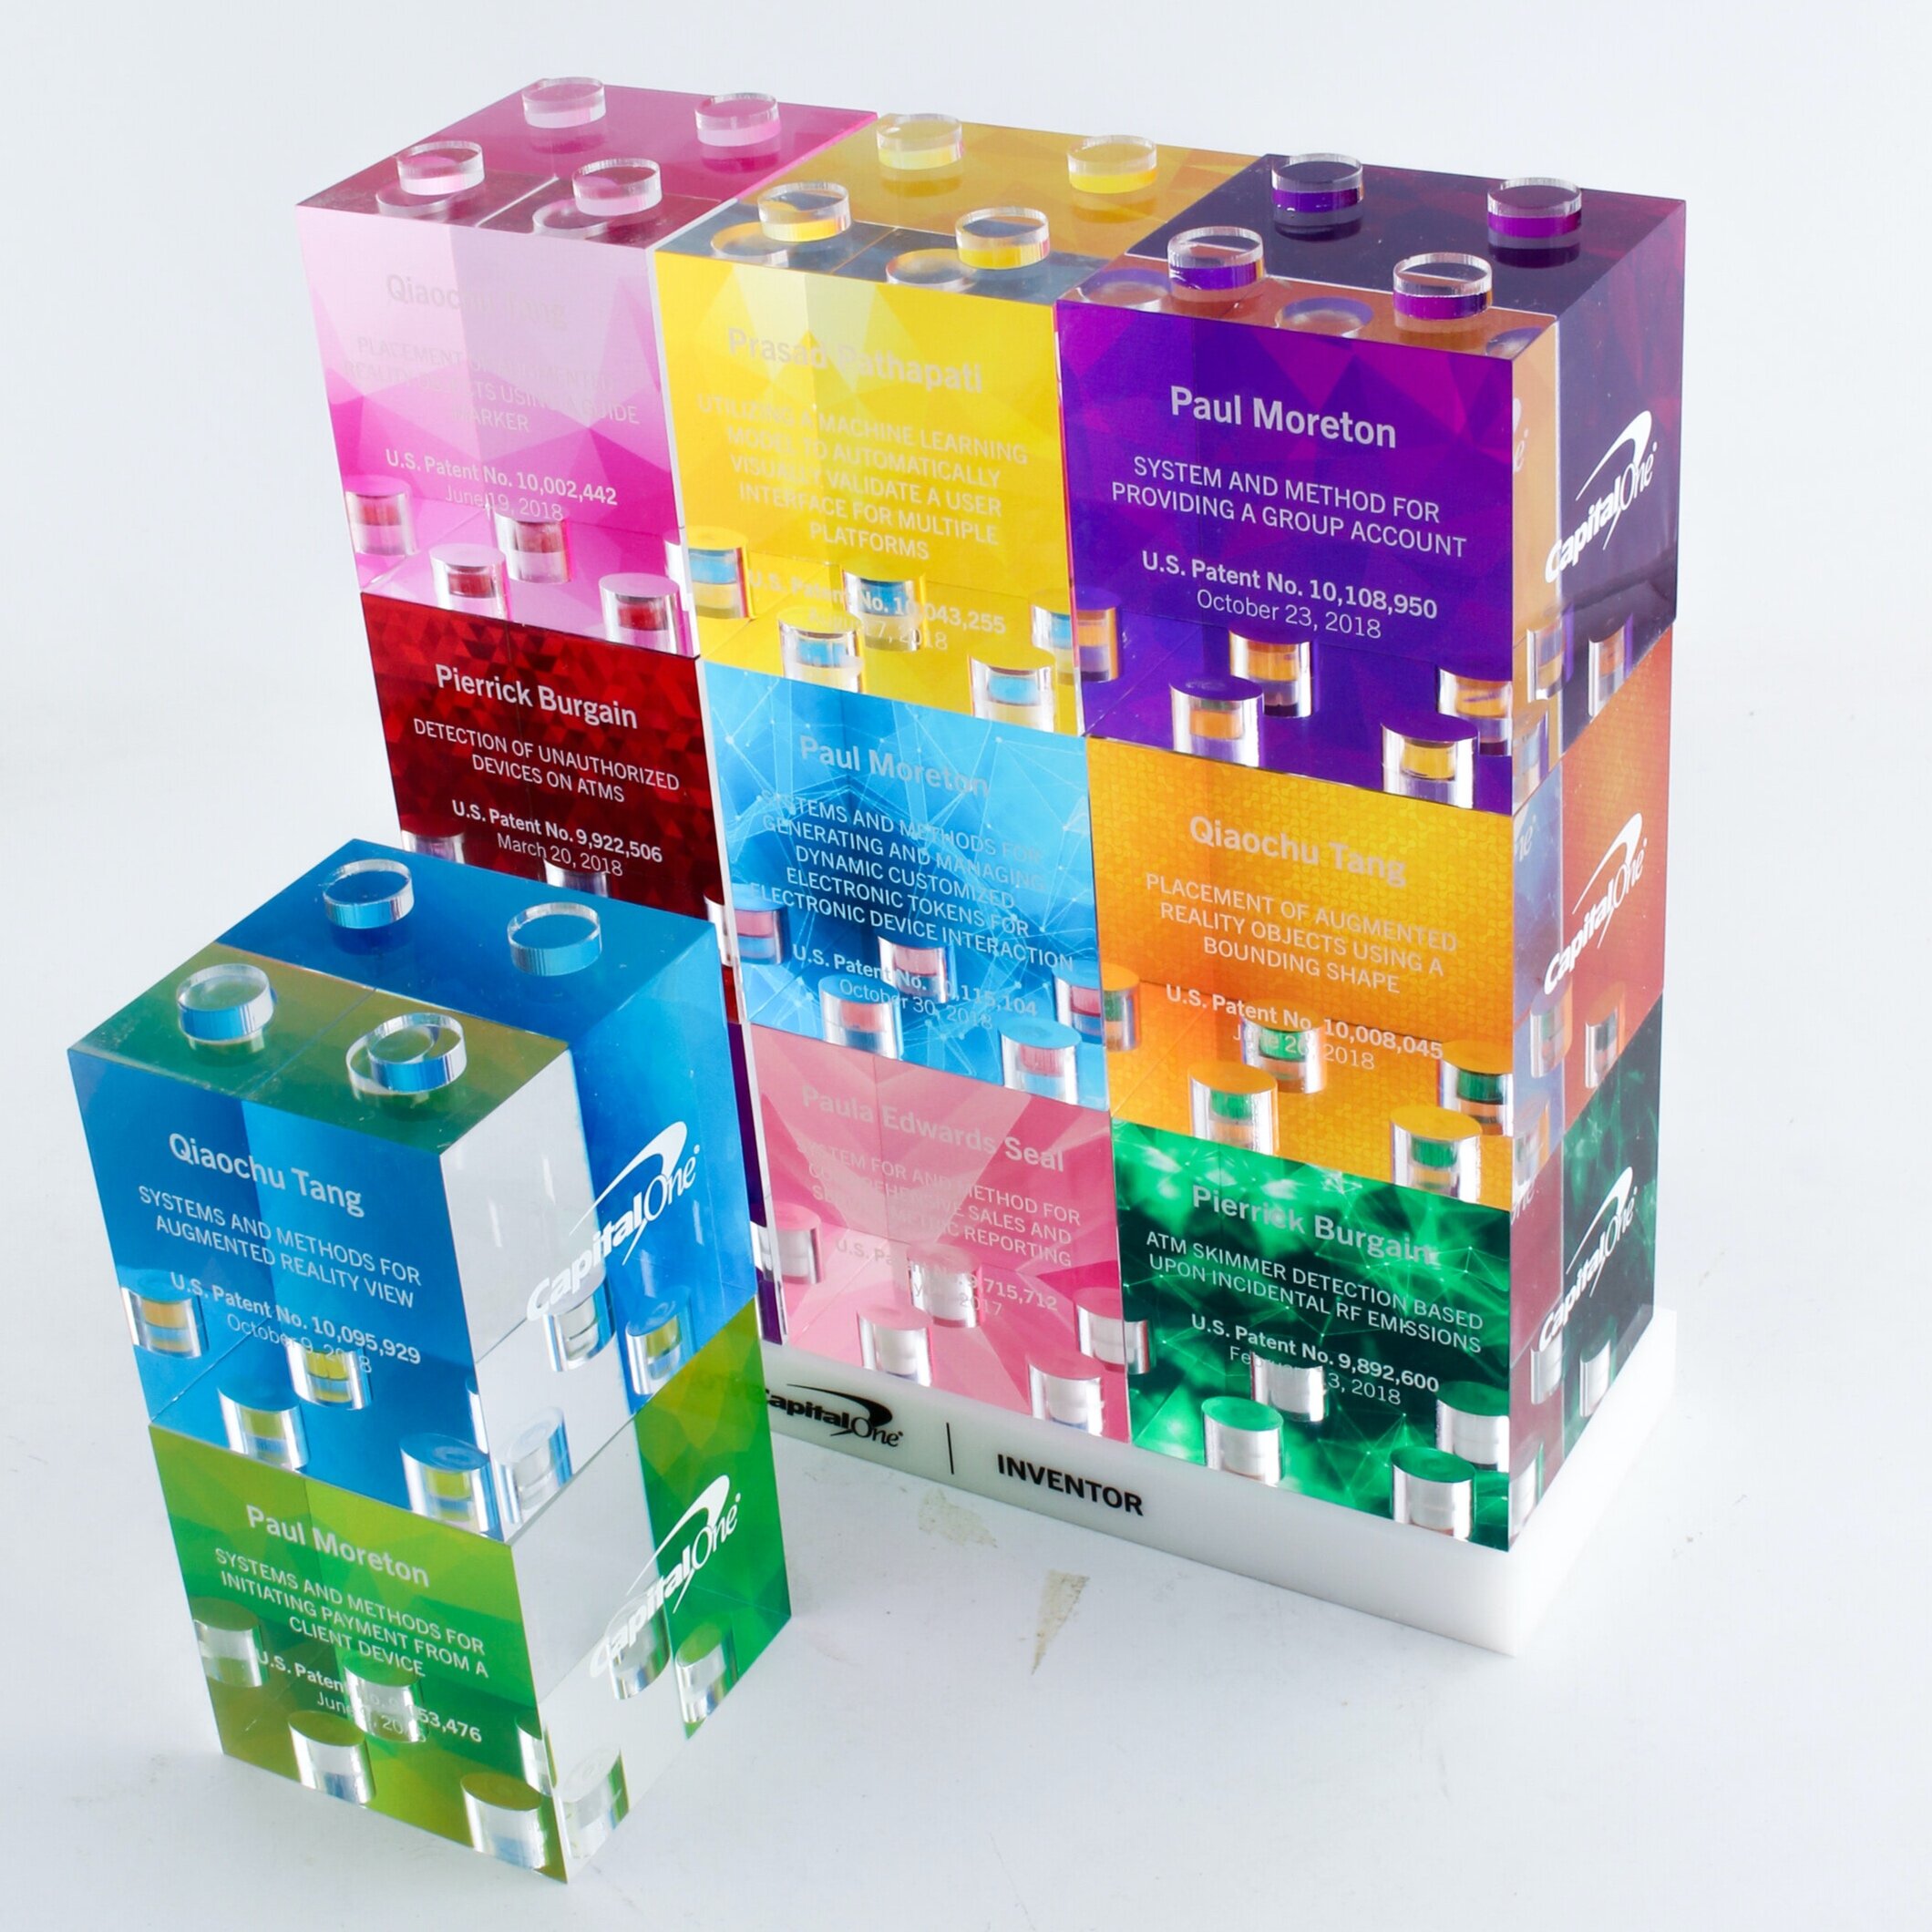 Capital One Rainbow stacking block awards lego style 2